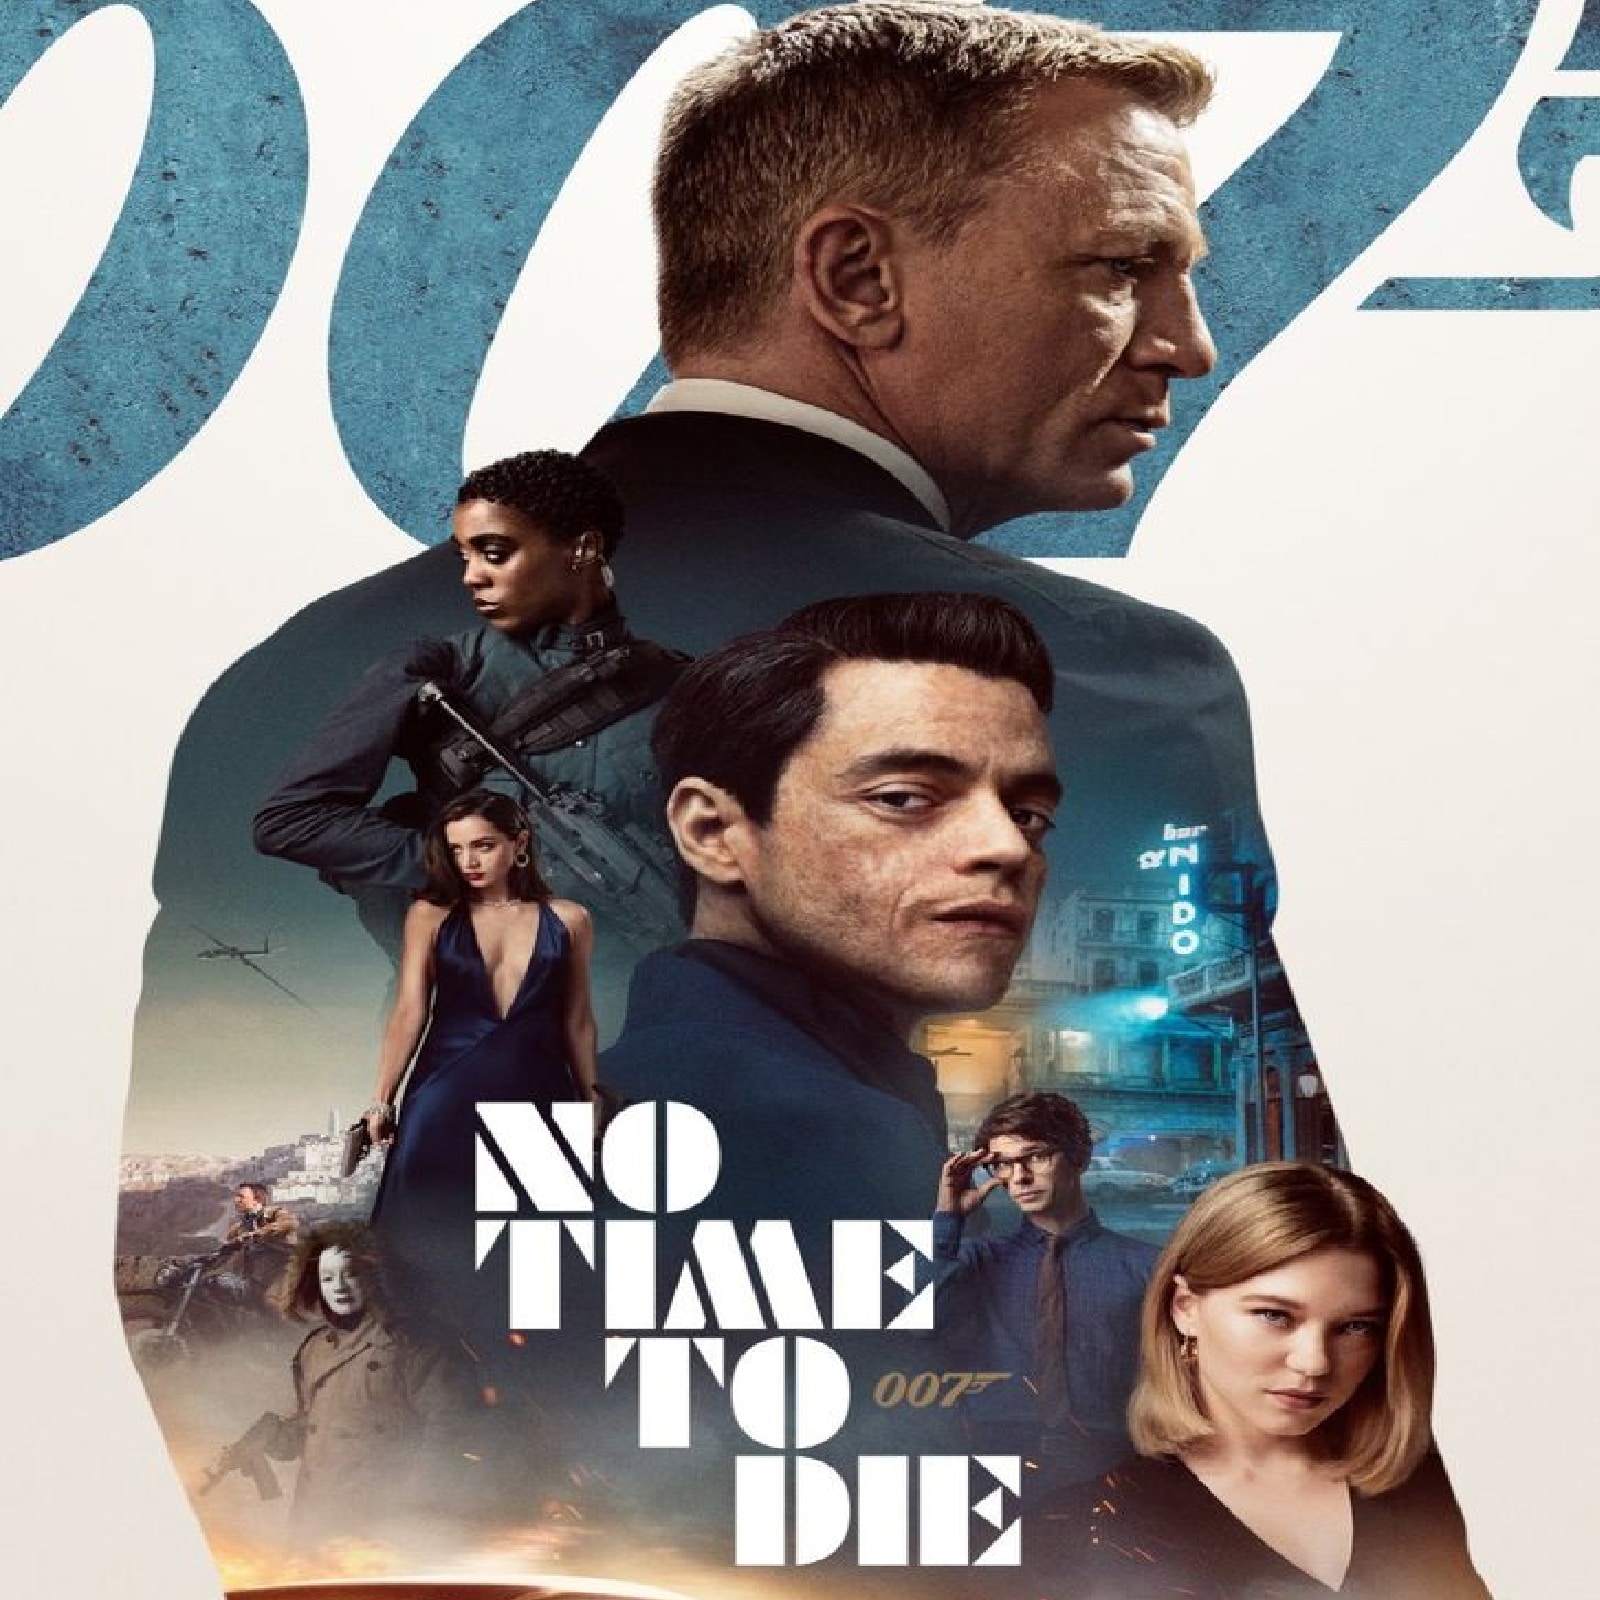  007 की अगली किस्त 'नो टाइम टू डाई' अमेजन प्राइम पर स्ट्रीम हो गई है. यह फिल्म पिछले साल 30 सितंबर को बॉक्स ऑफिस पर रिलीज हुई थी. इसमें डैनियल क्रैग जेम्स बॉन्ड का लीड रोल निभा रहे हैं.